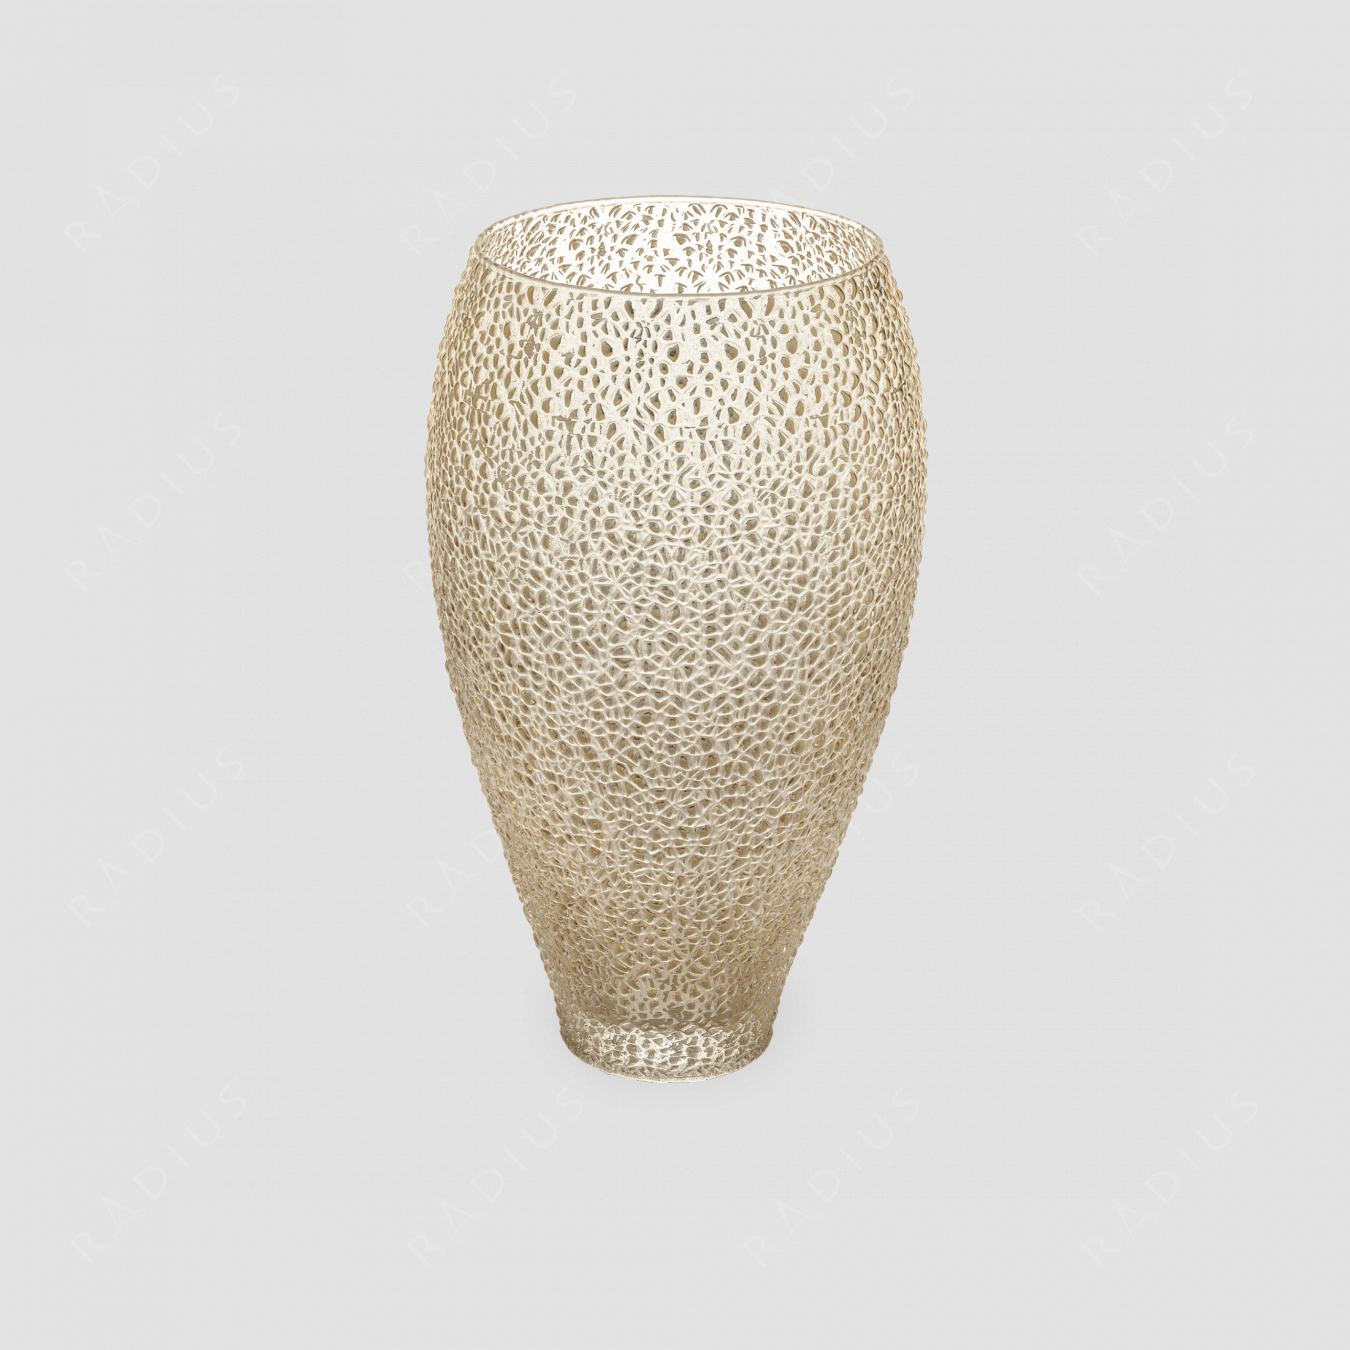 Стеклянная ваза для цветов, диаметр: 17,5 см, высота: 30 см, материал: стекло, цвет: золотой, серия Special, IVV (Italy), Италия